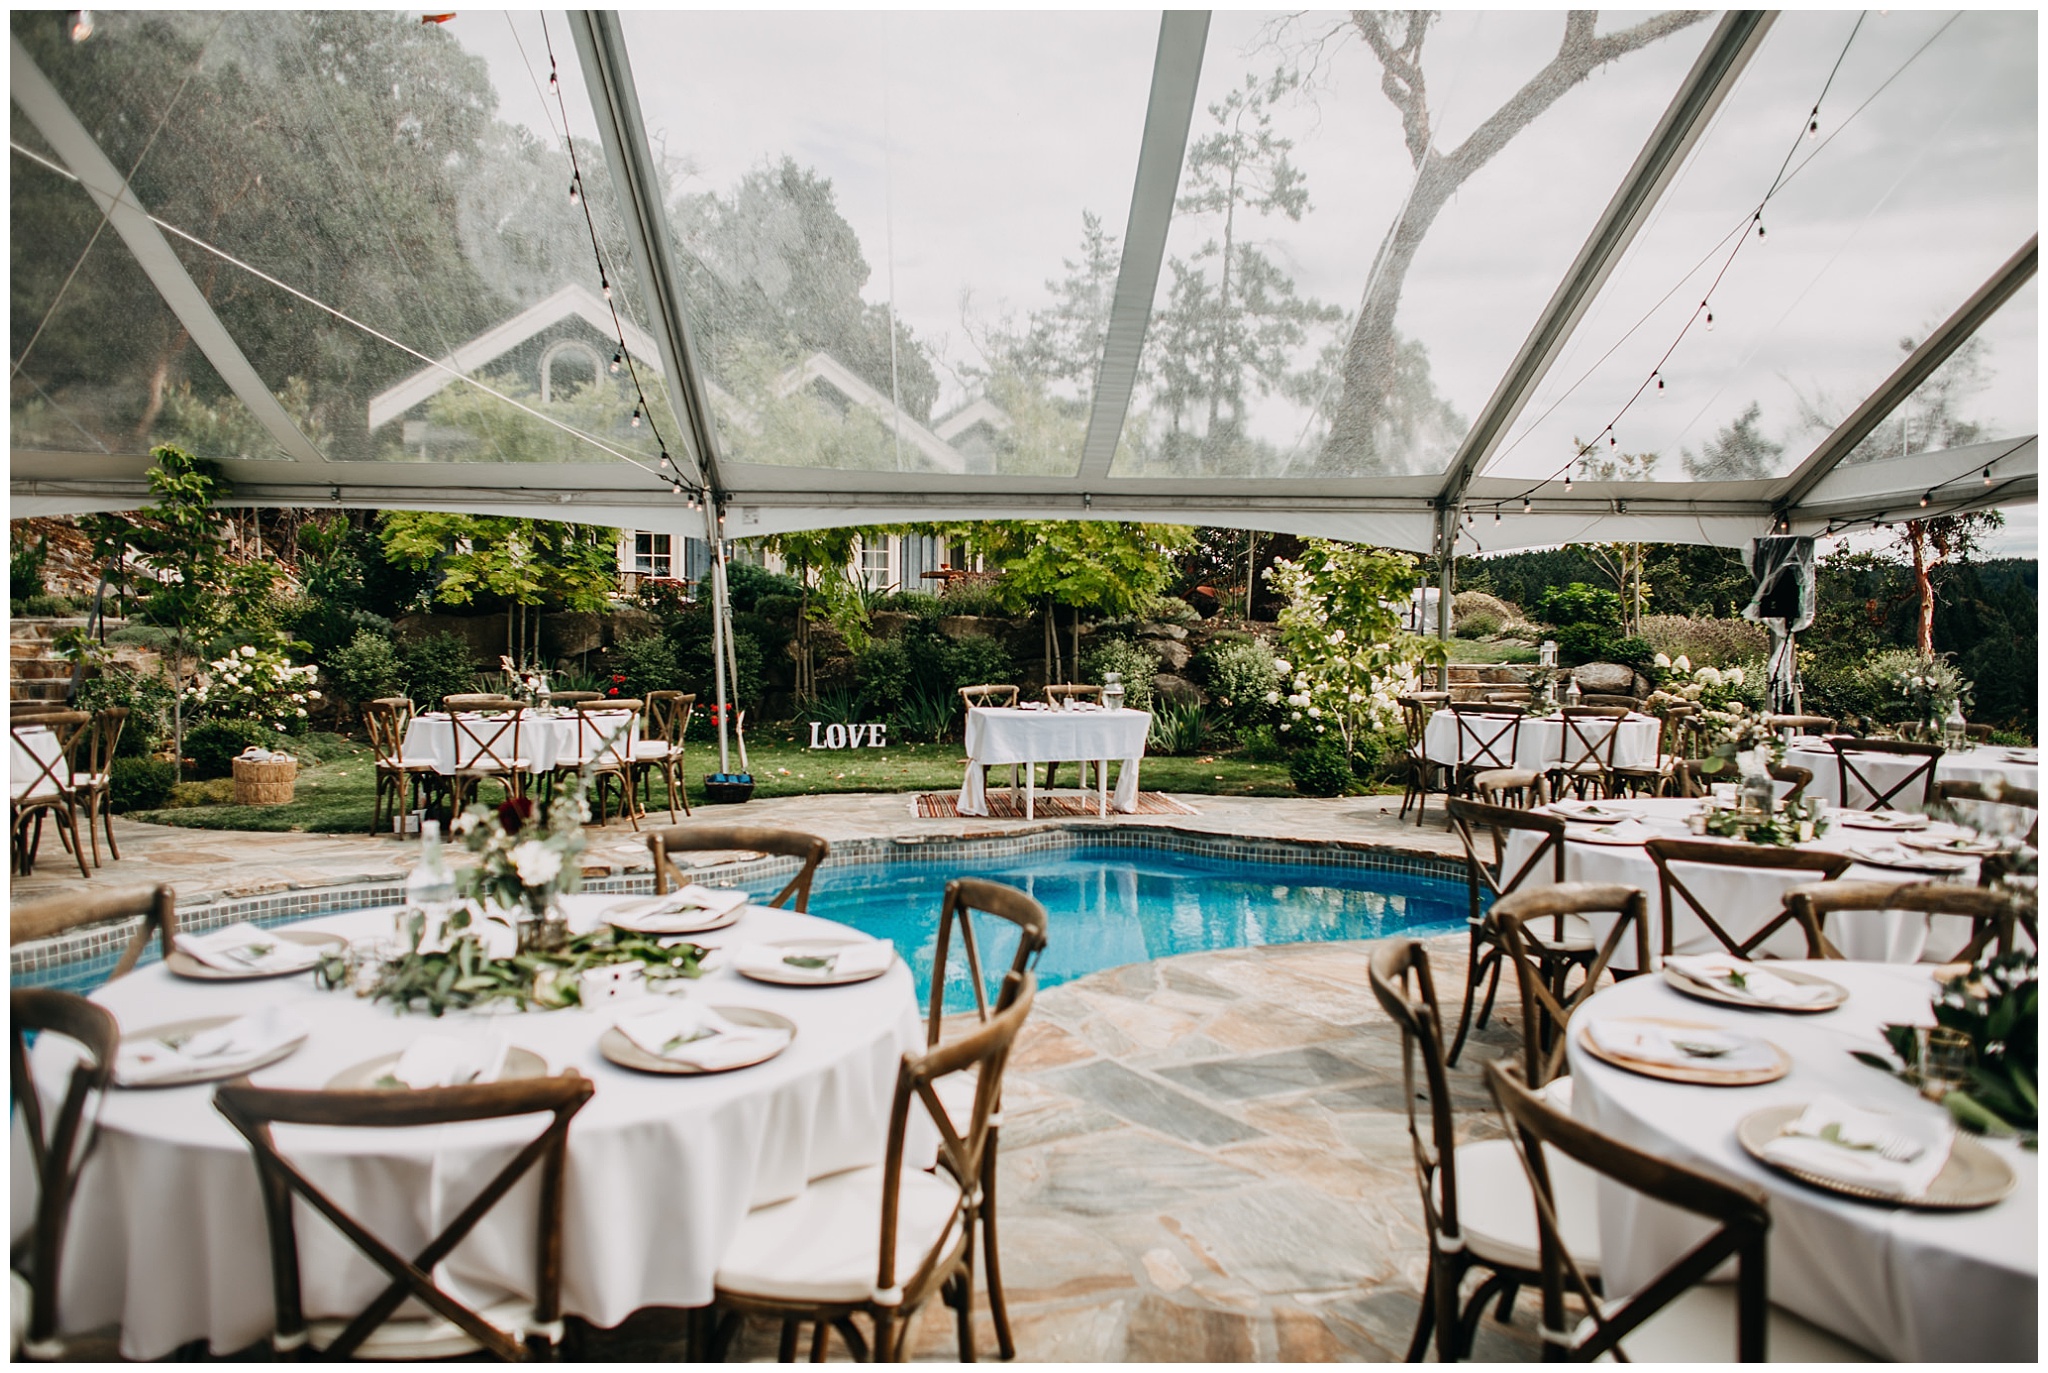 intimate mayne island backyard wedding reception decor by pool